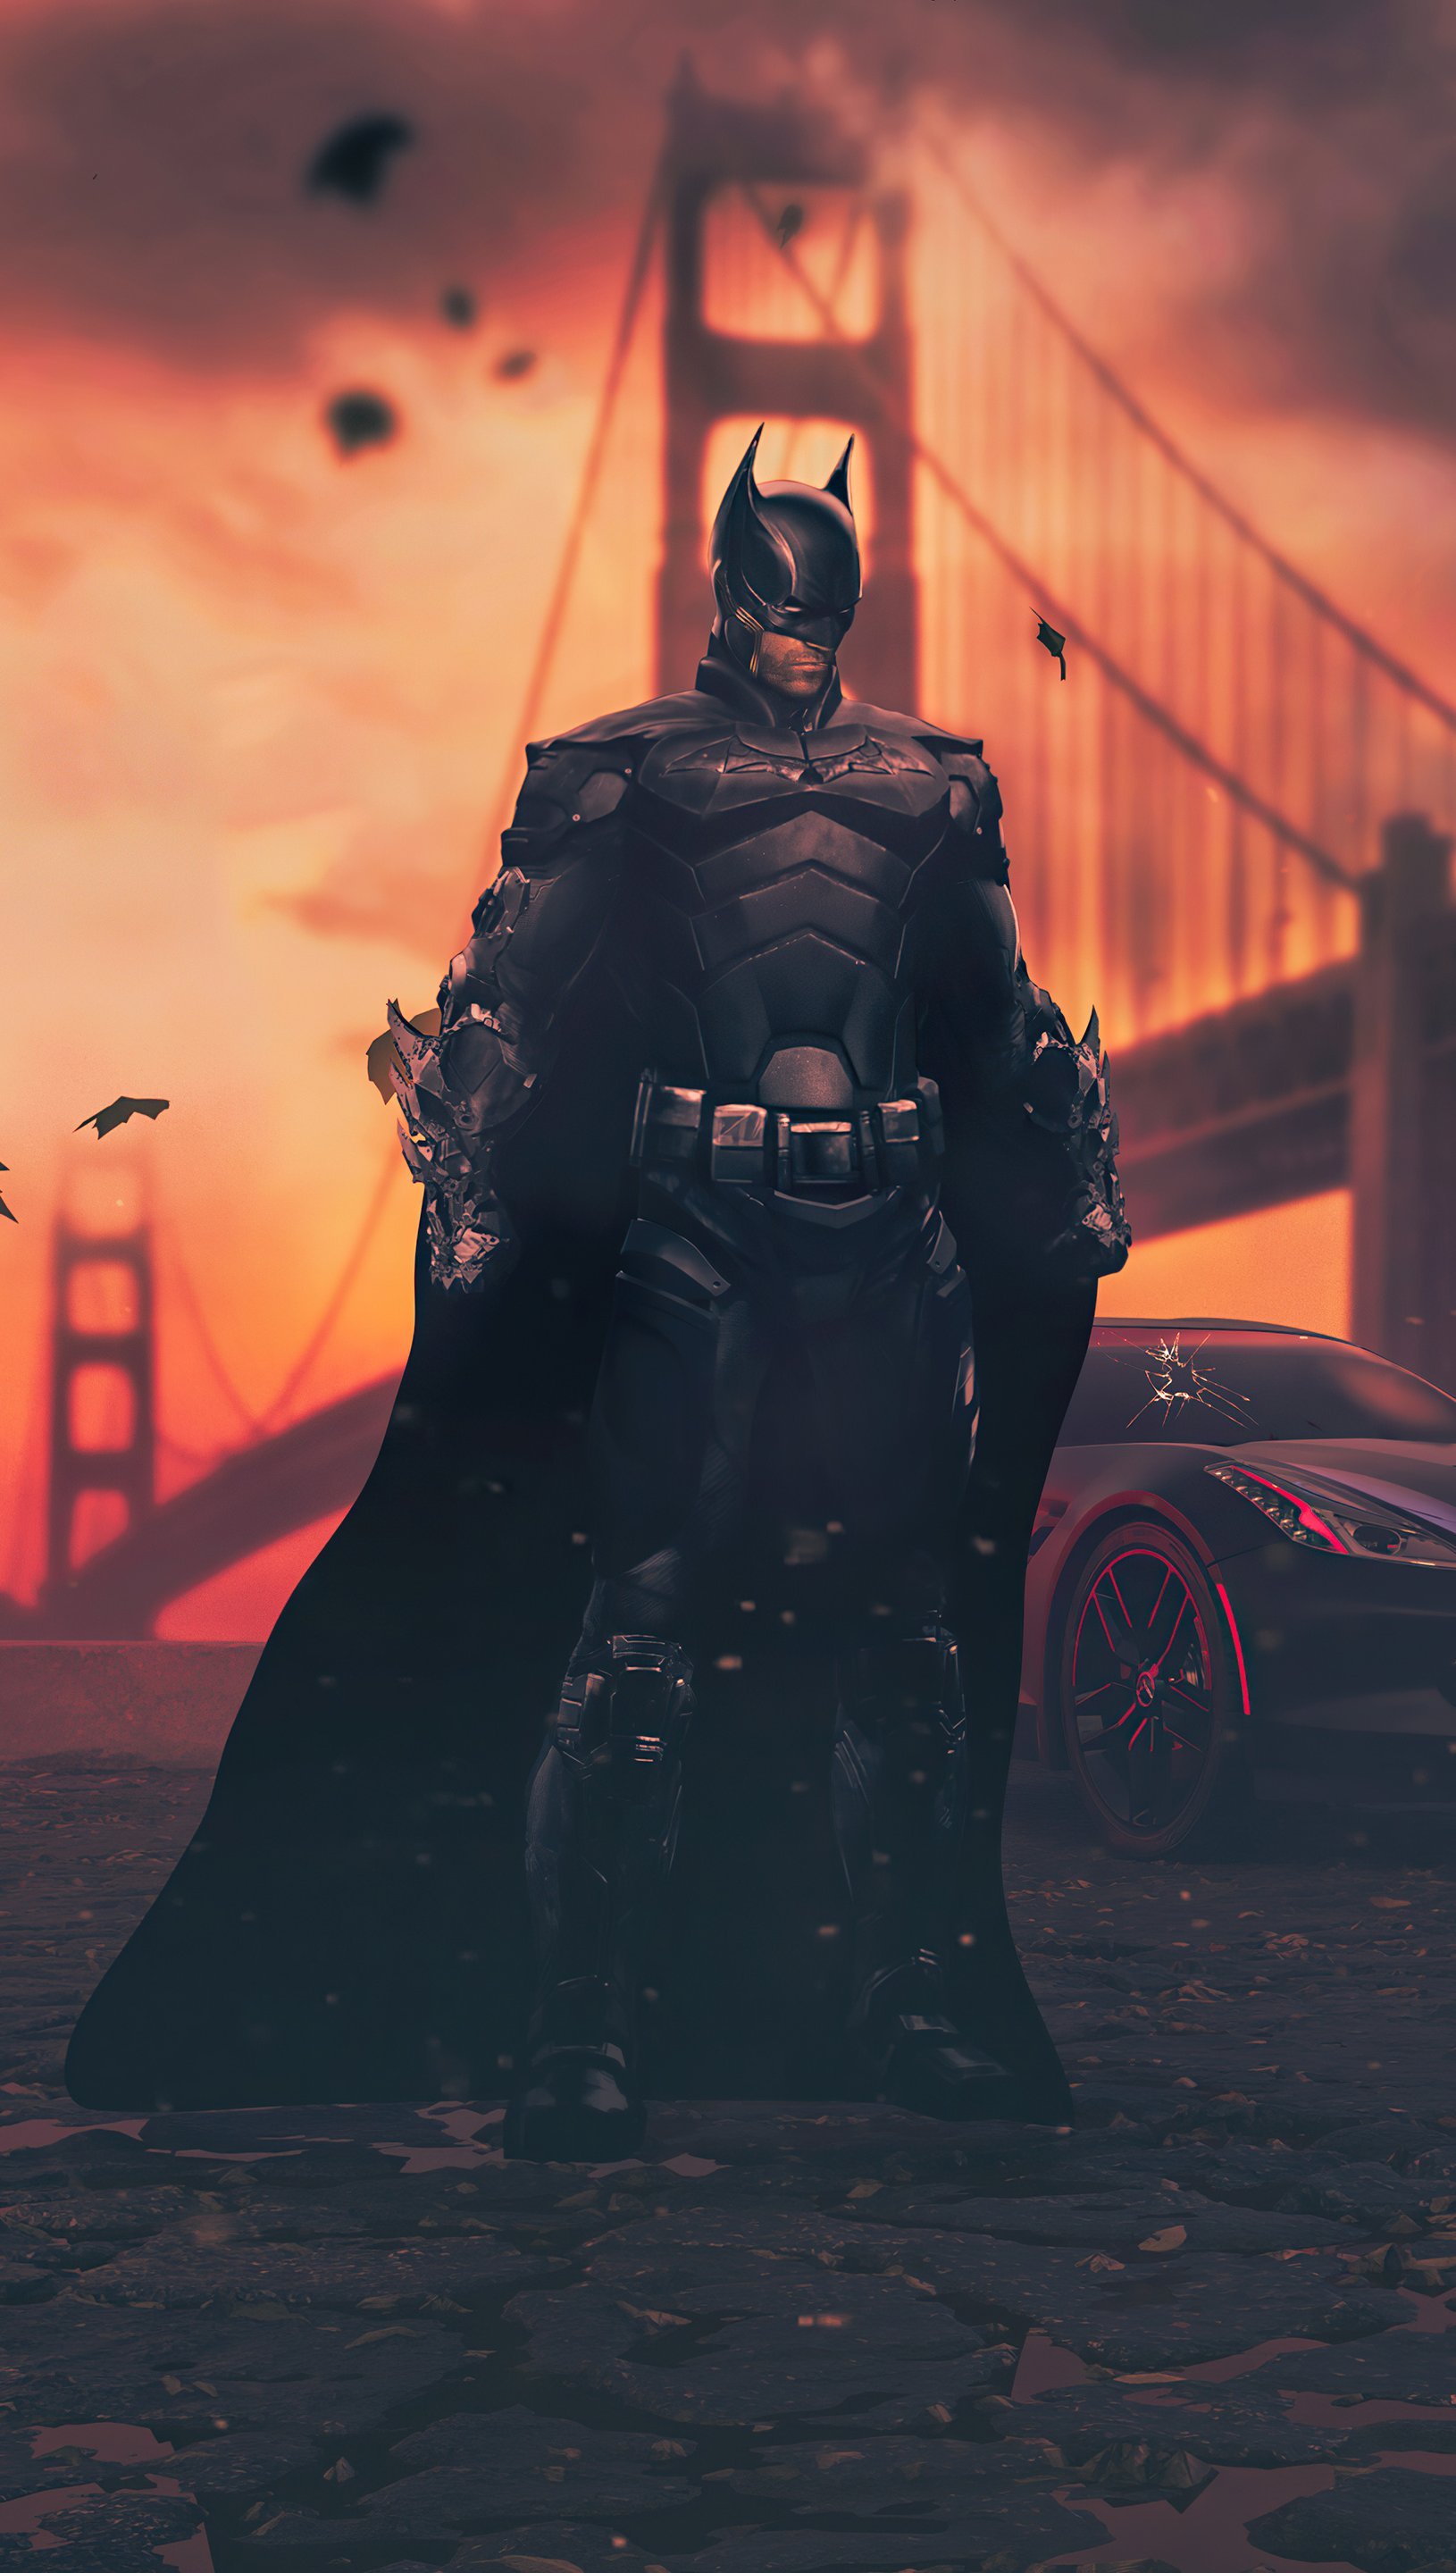 Wallpaper Batman Legend of the dark knight Vertical